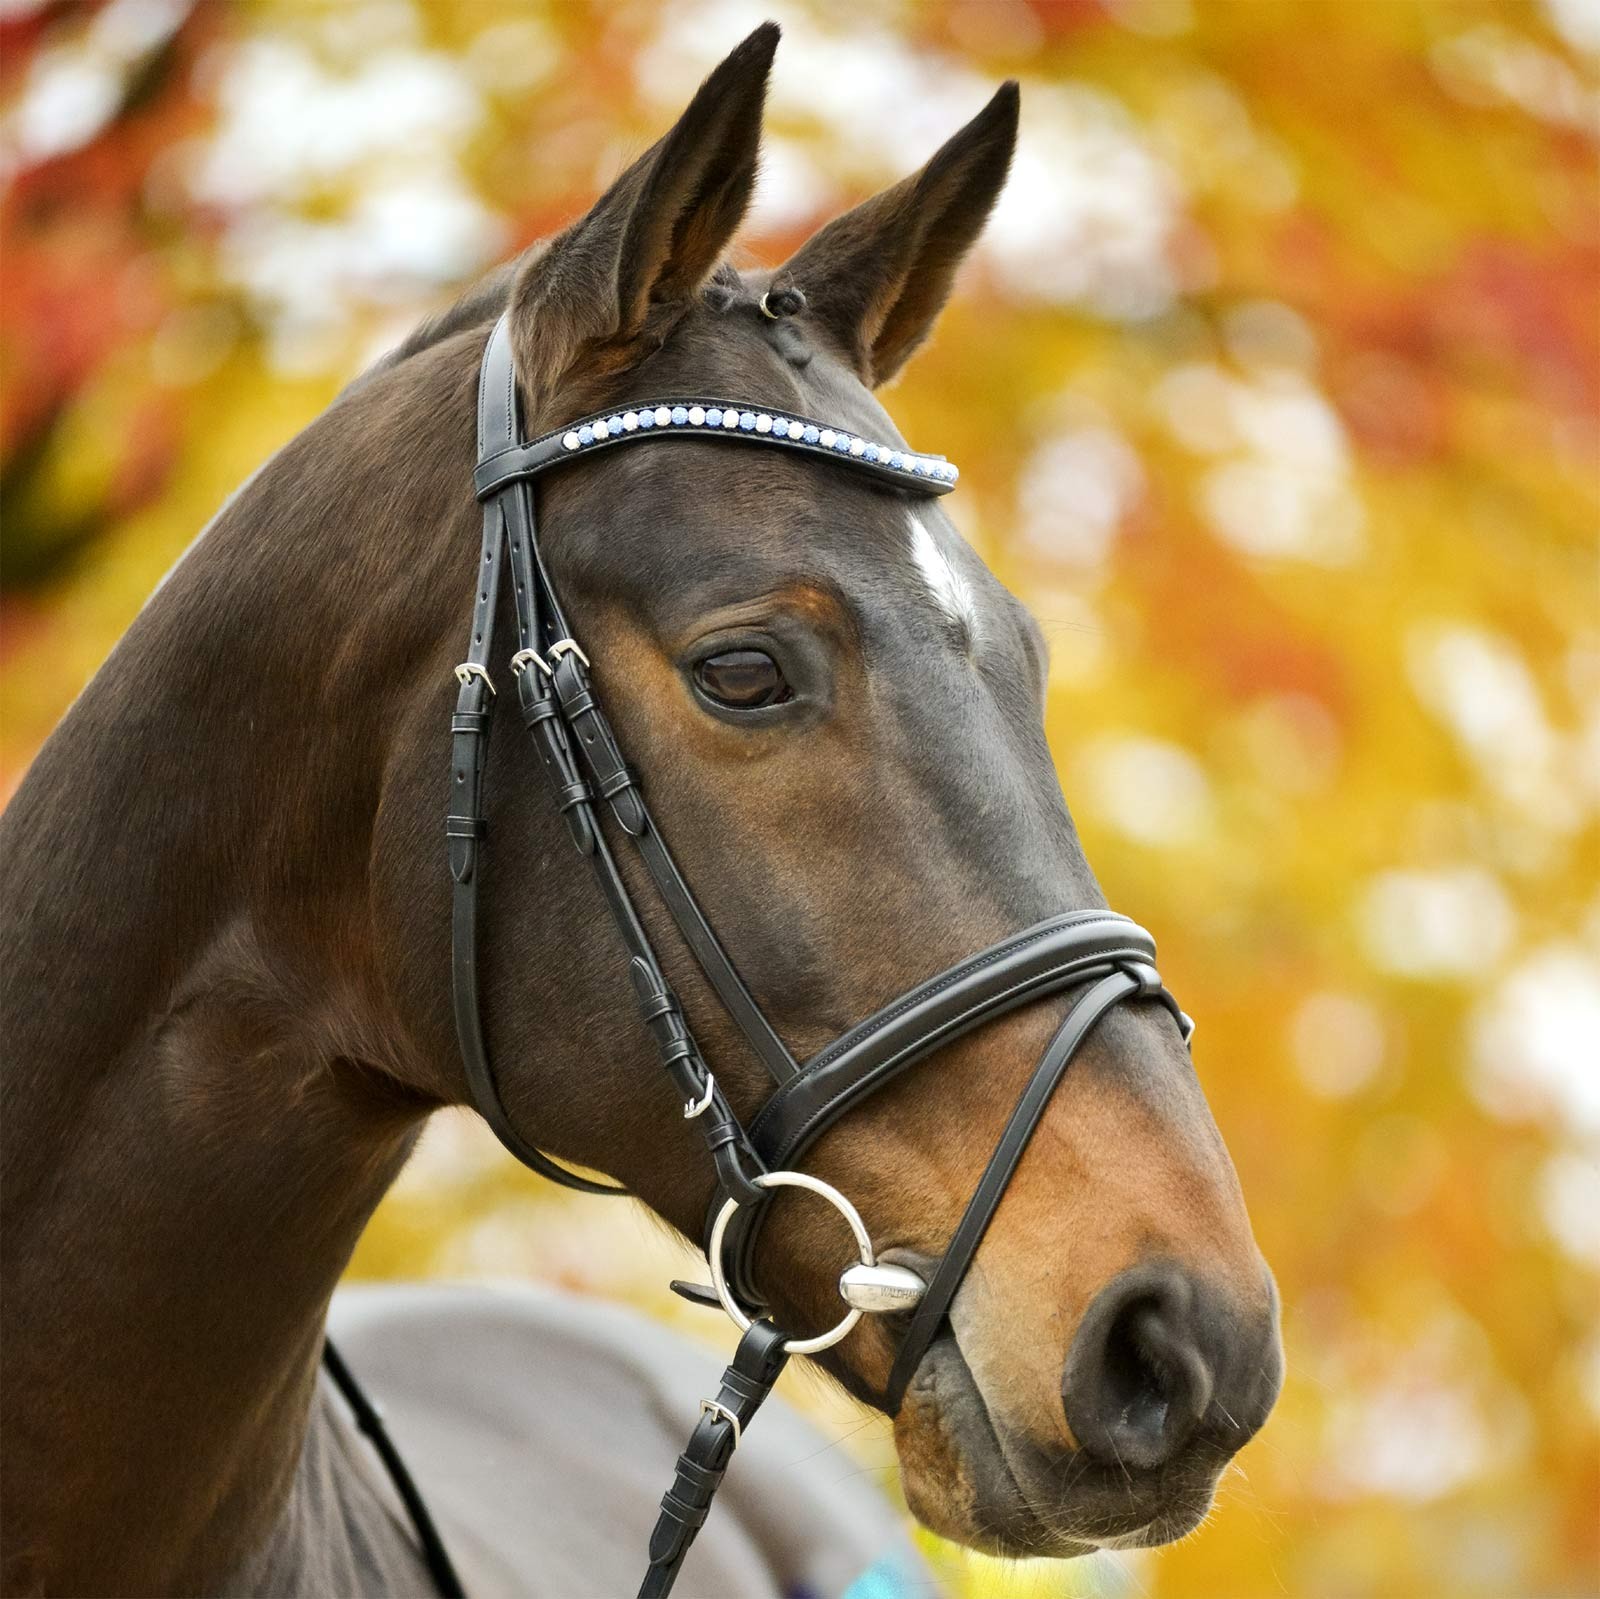 Предметы конной упряжи : уздечка для лошади, недоуздок, виды узды и как сделать уздечку своими руками